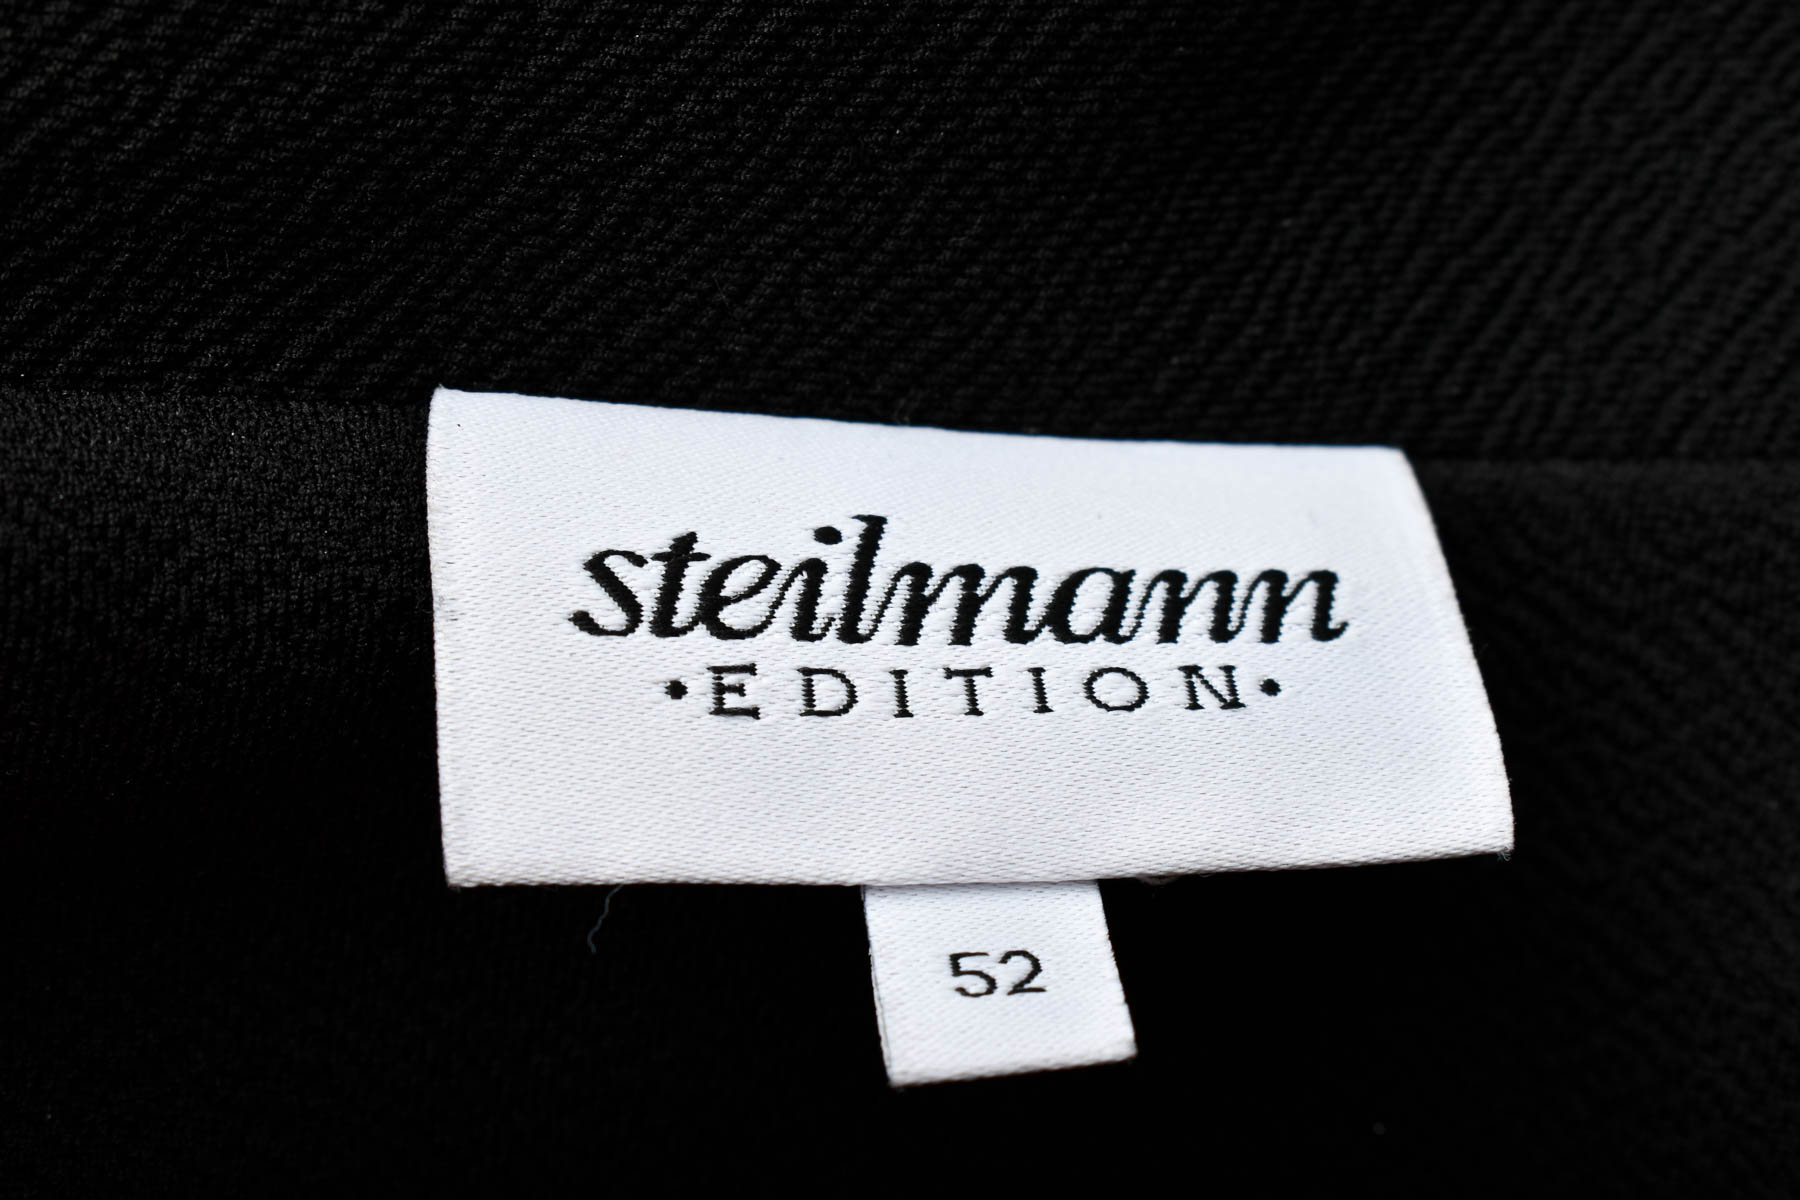 Women's blazer - Steilmann - 2